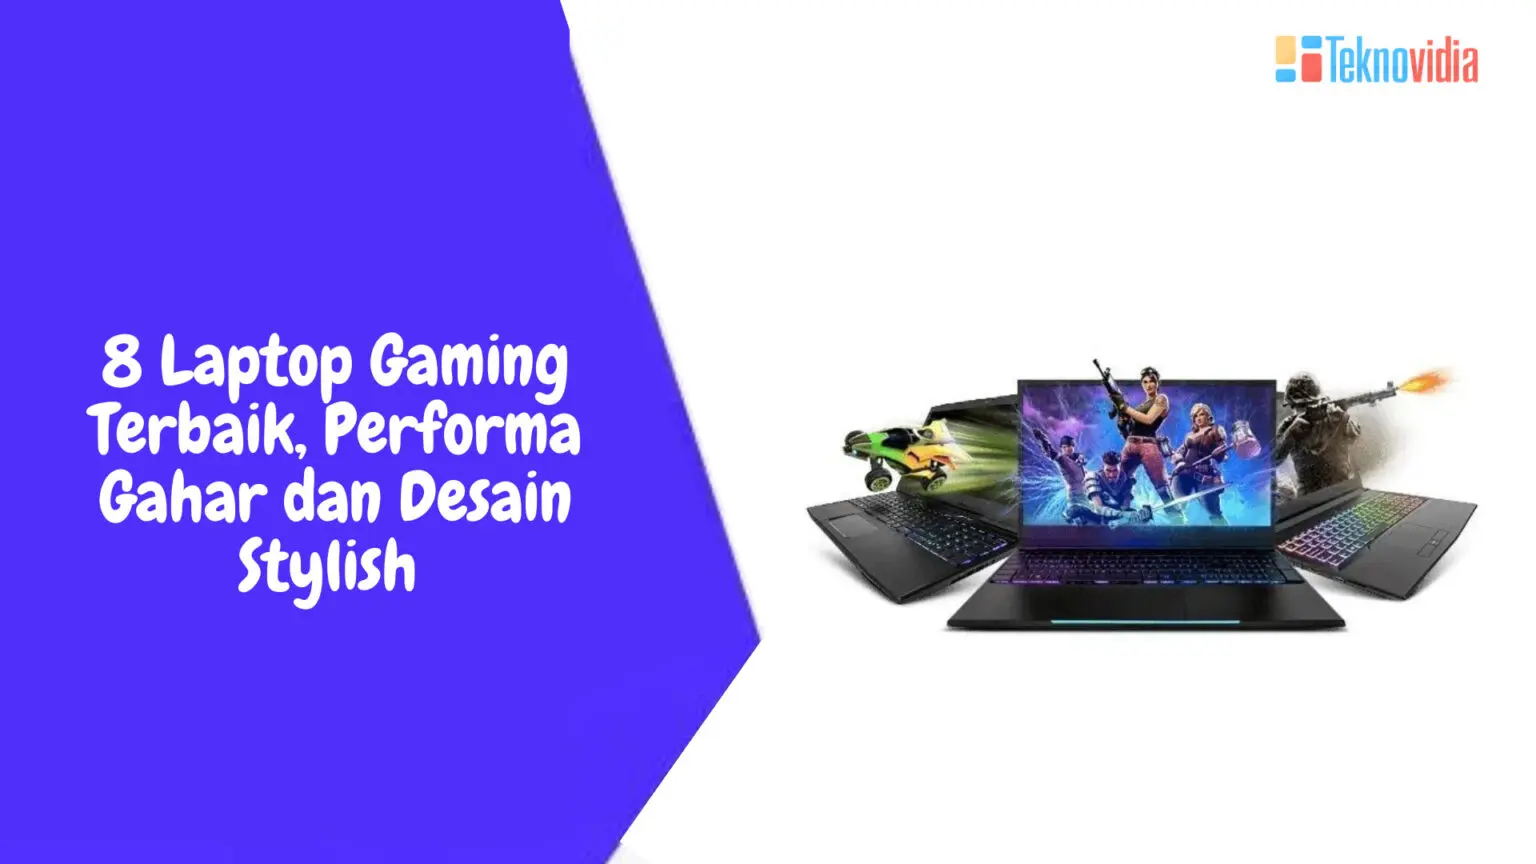 8 Laptop Gaming Terbaik, Performa Gahar dan Desain Stylish